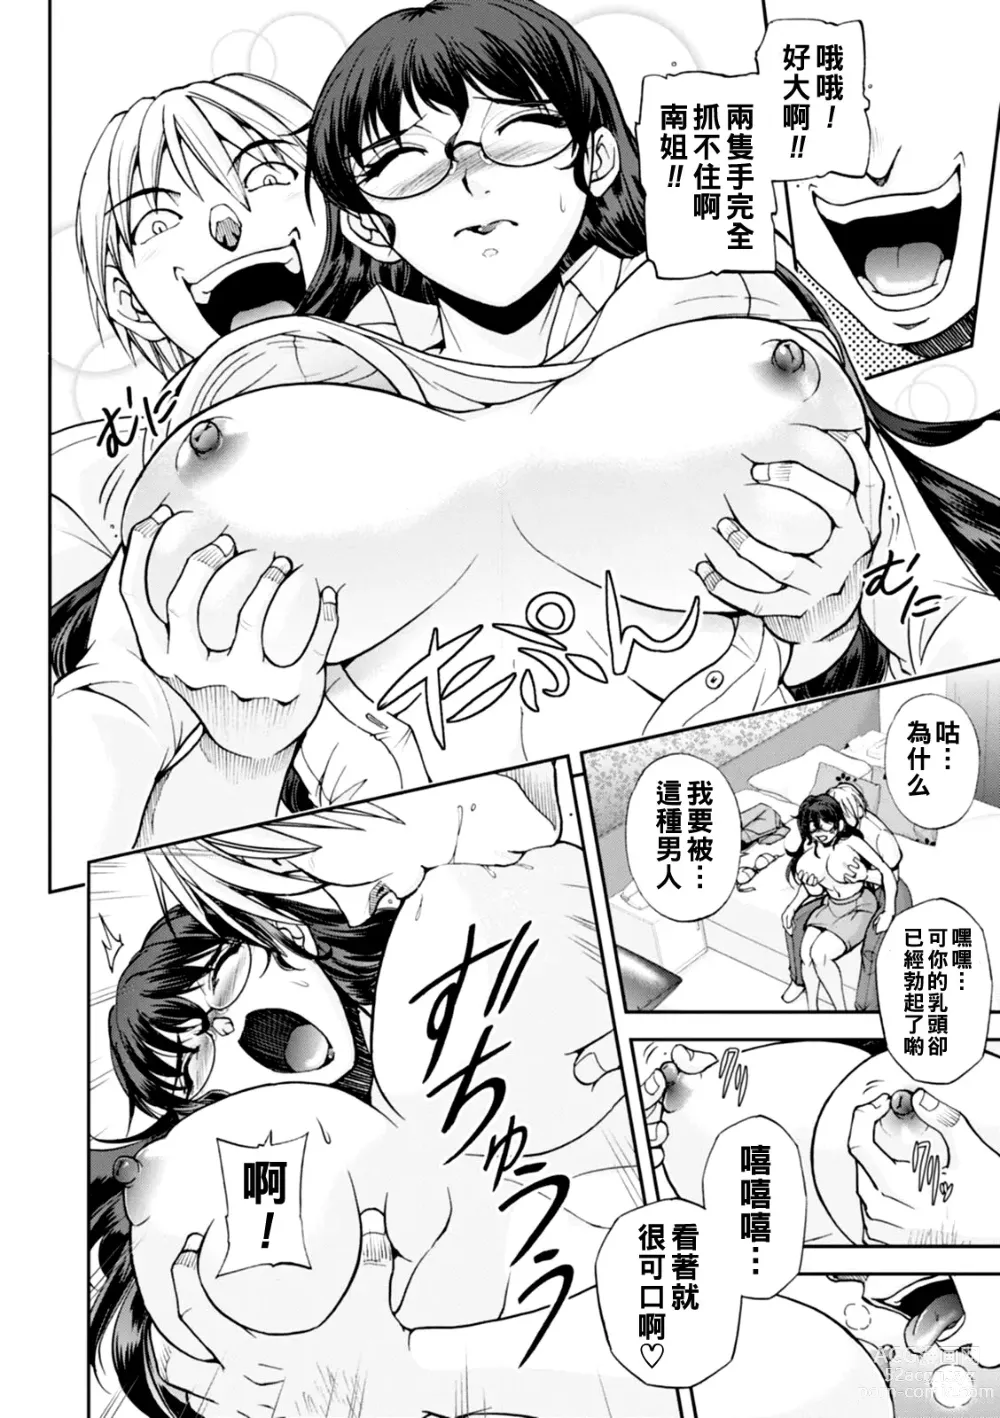 Page 11 of manga Maruhadaka no Minami-san Ch. 1-4